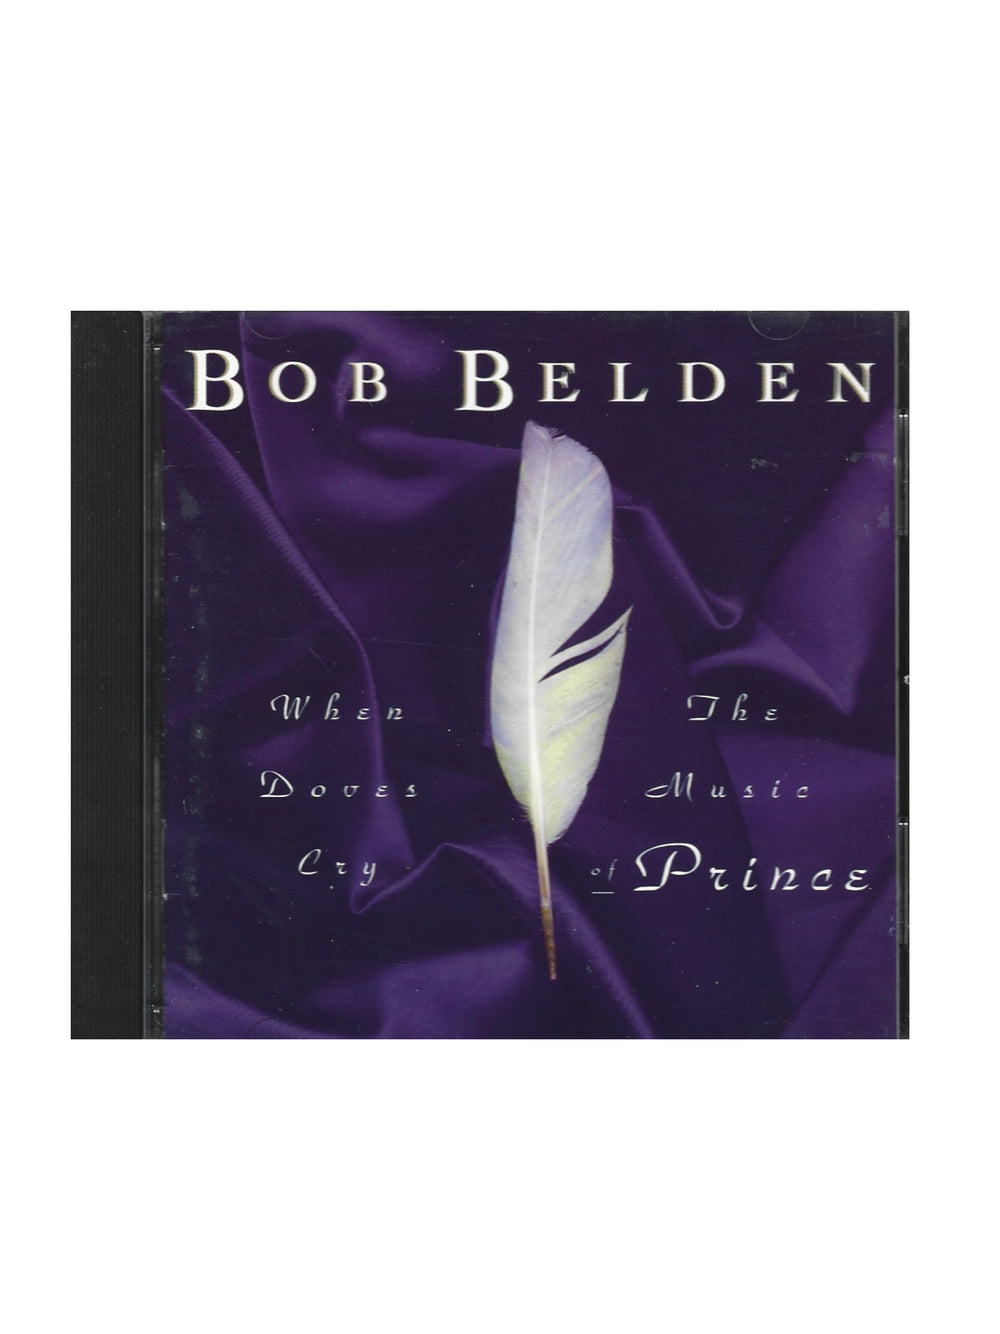 Prince – Bob Belden The Music Of Prince Jazz CD Album UK Preloved: 1994